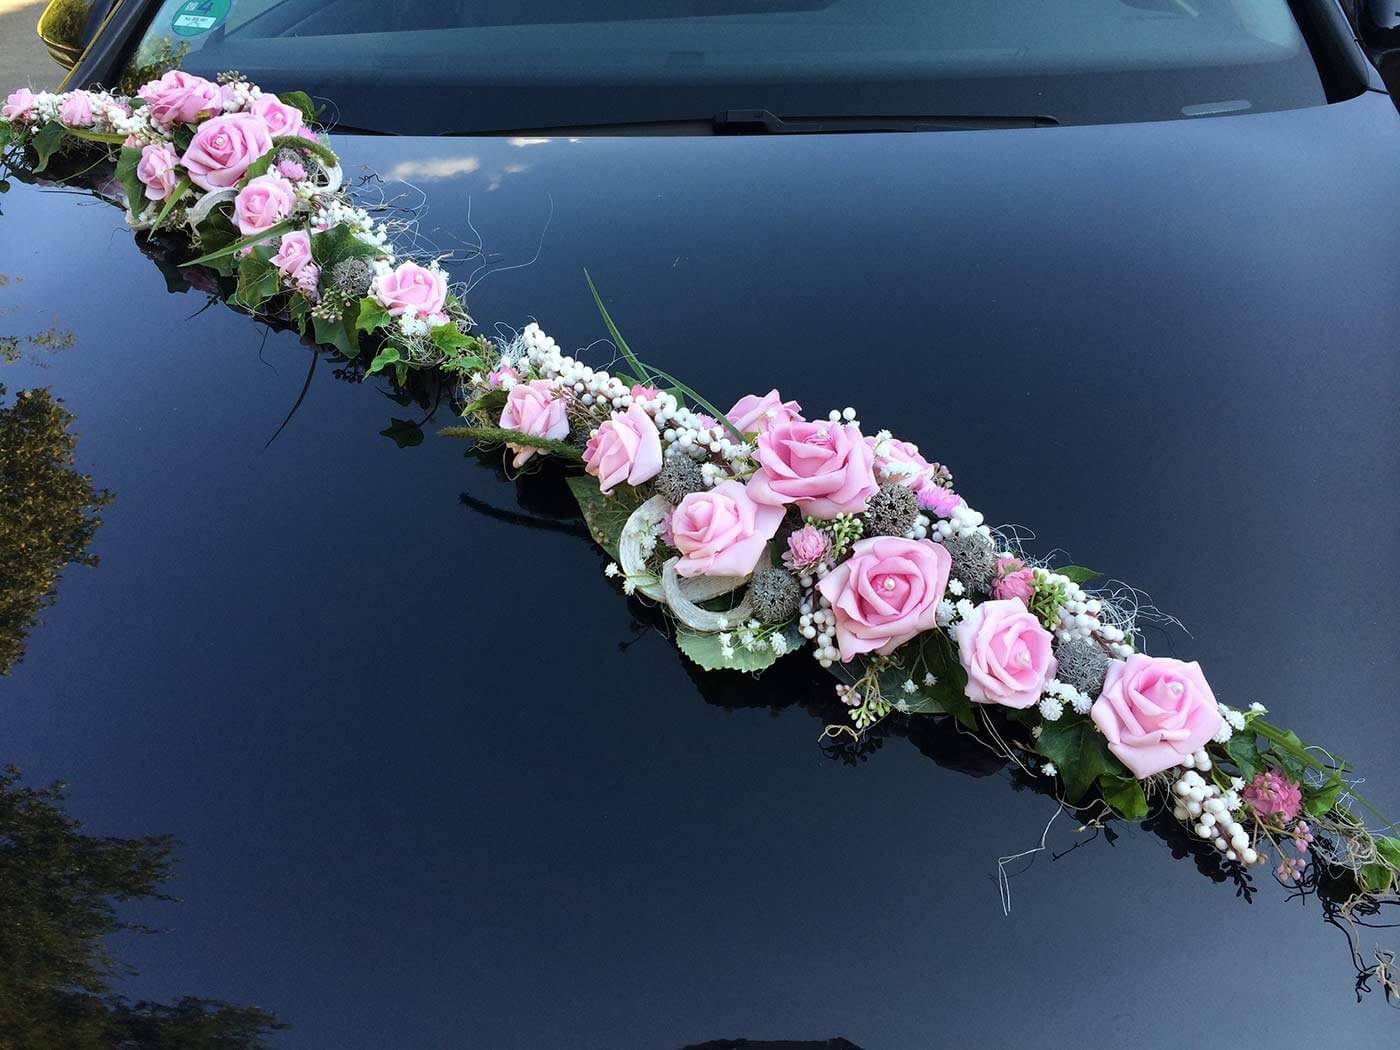 Autoschmuck zur Hochzeit aus Rosen